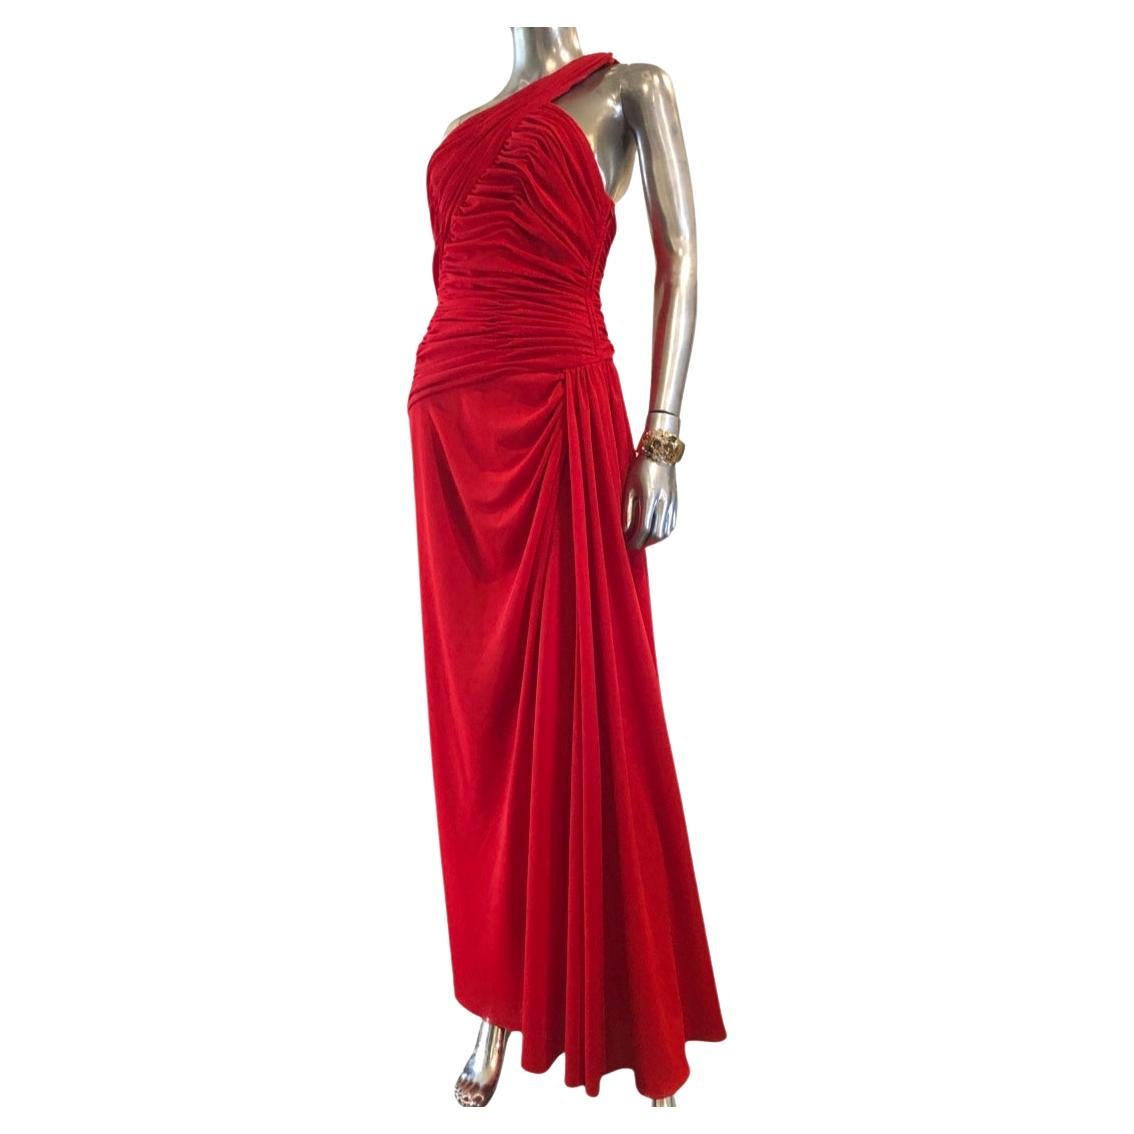 Estevez Hollywood Vintage One Shoulder Draped Red Crepe Dress Size 8 For Sale